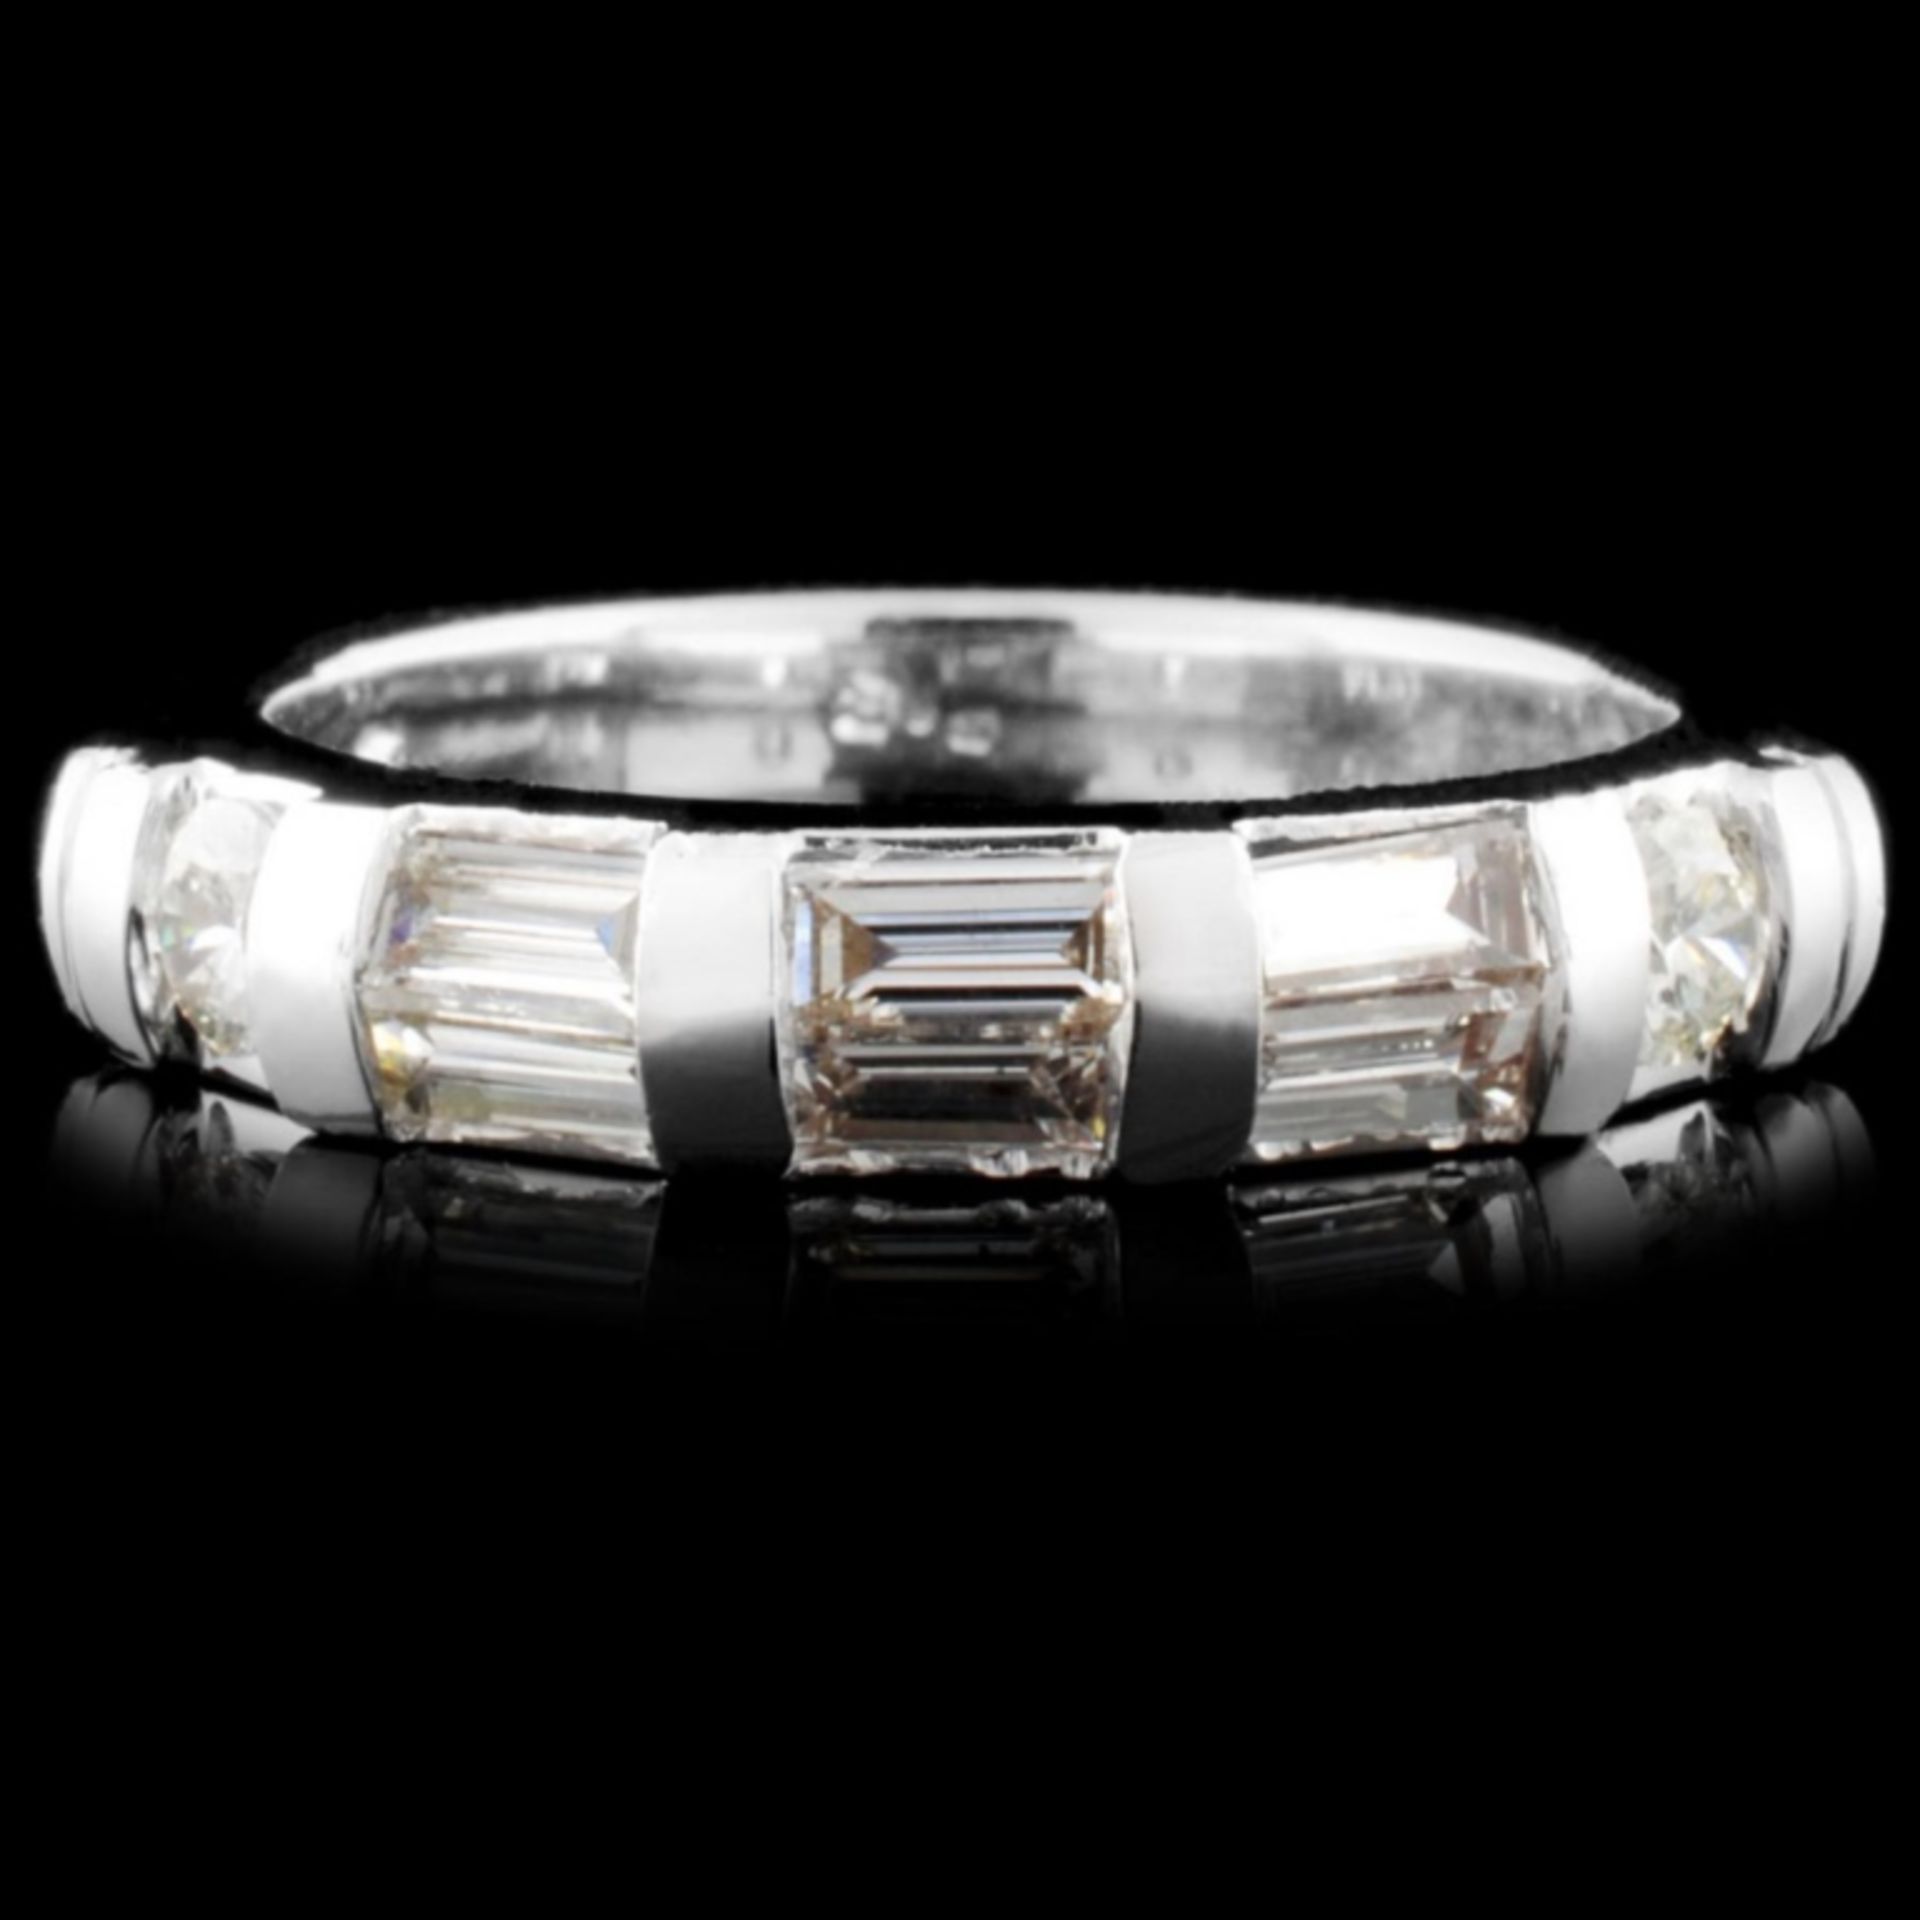 Platinum 0.56ctw Diamond Ring - Image 2 of 3